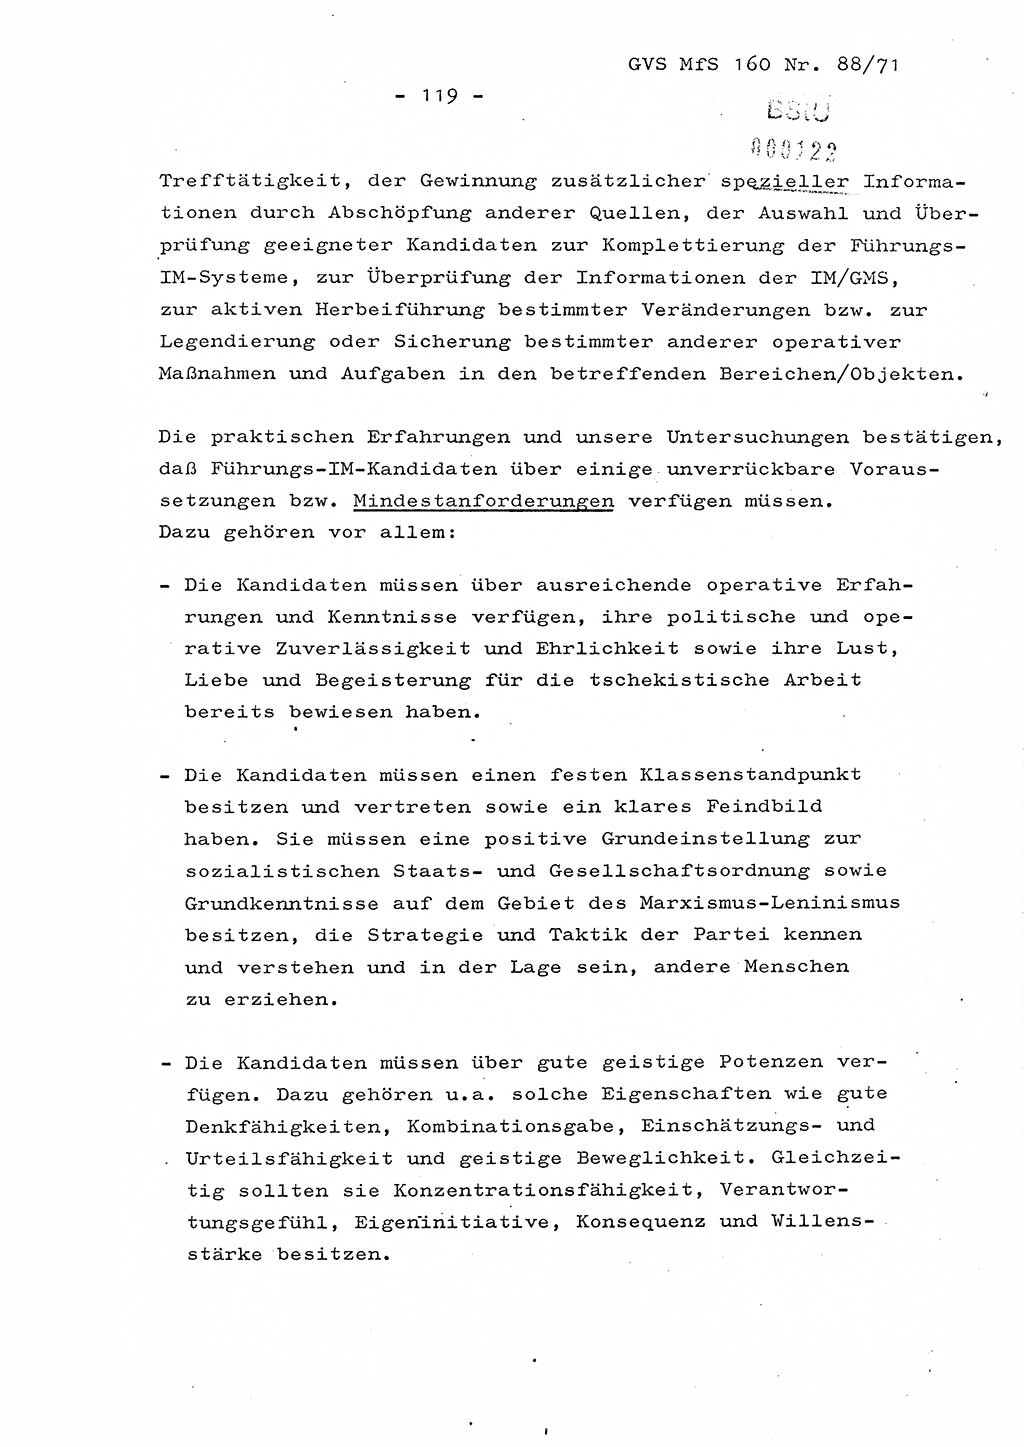 Dissertation Oberstleutnant Josef Schwarz (BV Schwerin), Major Fritz Amm (JHS), Hauptmann Peter Gräßler (JHS), Ministerium für Staatssicherheit (MfS) [Deutsche Demokratische Republik (DDR)], Juristische Hochschule (JHS), Geheime Verschlußsache (GVS) 160-88/71, Potsdam 1972, Seite 119 (Diss. MfS DDR JHS GVS 160-88/71 1972, S. 119)